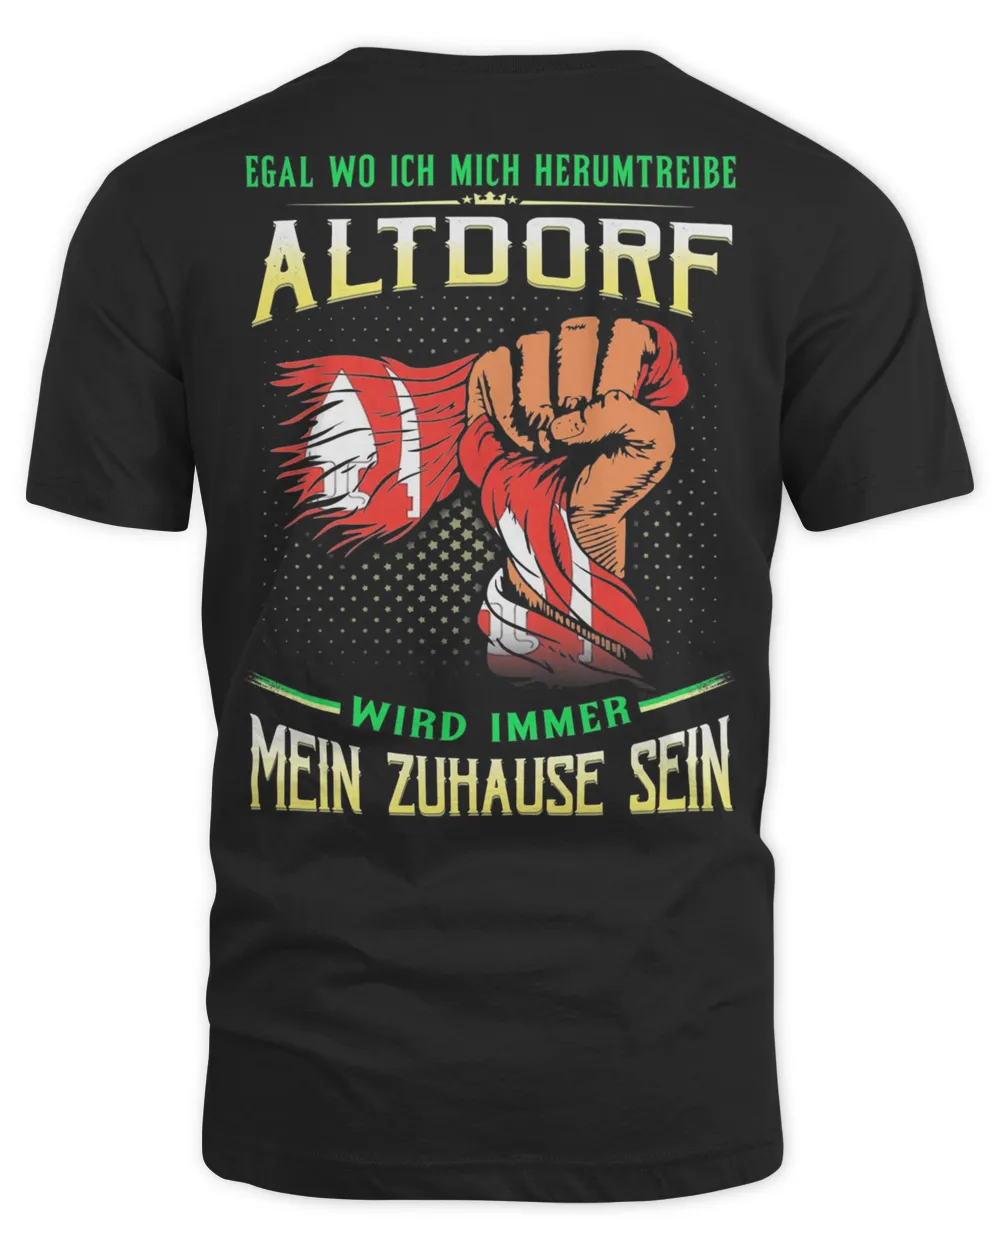 Egal Wo Ich Mich Herumtreibe Altdorf Wird Immer Mein Zuhause Sein Shirt Unisex Standard T-Shirt black xl